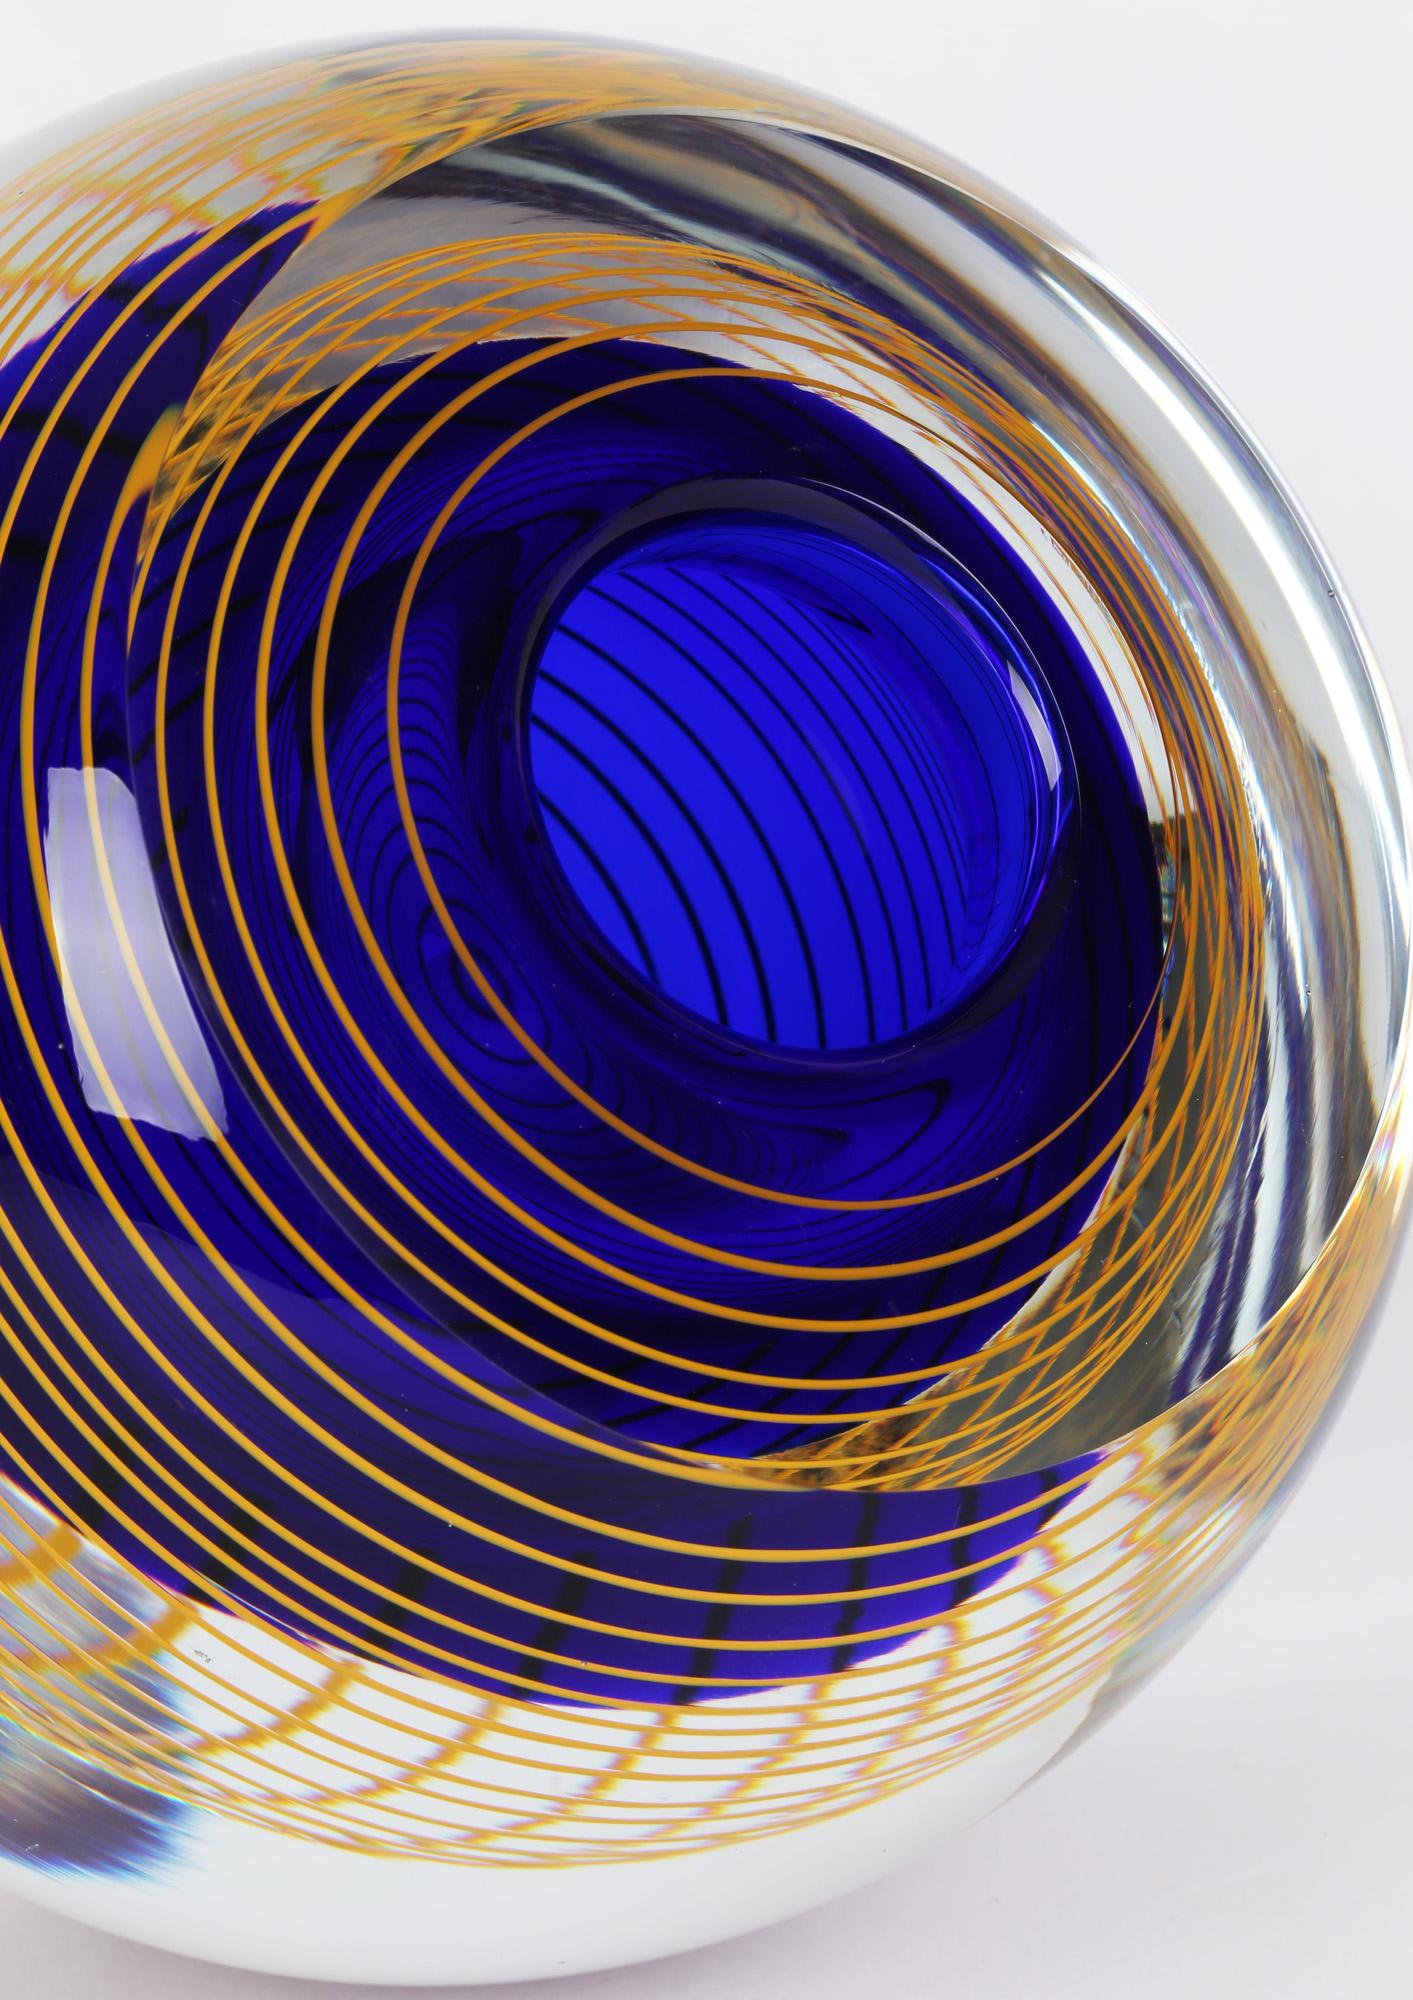 Un étonnant vase en verre d'art tchèque avec un design en spirale par Stanislav Libensky (1921-2002) pour Beranek Skrdlovice Glassworks et datant d'environ 1977. Ce vase fortement fait à la main est de forme bulbeuse arrondie avec une base étroite